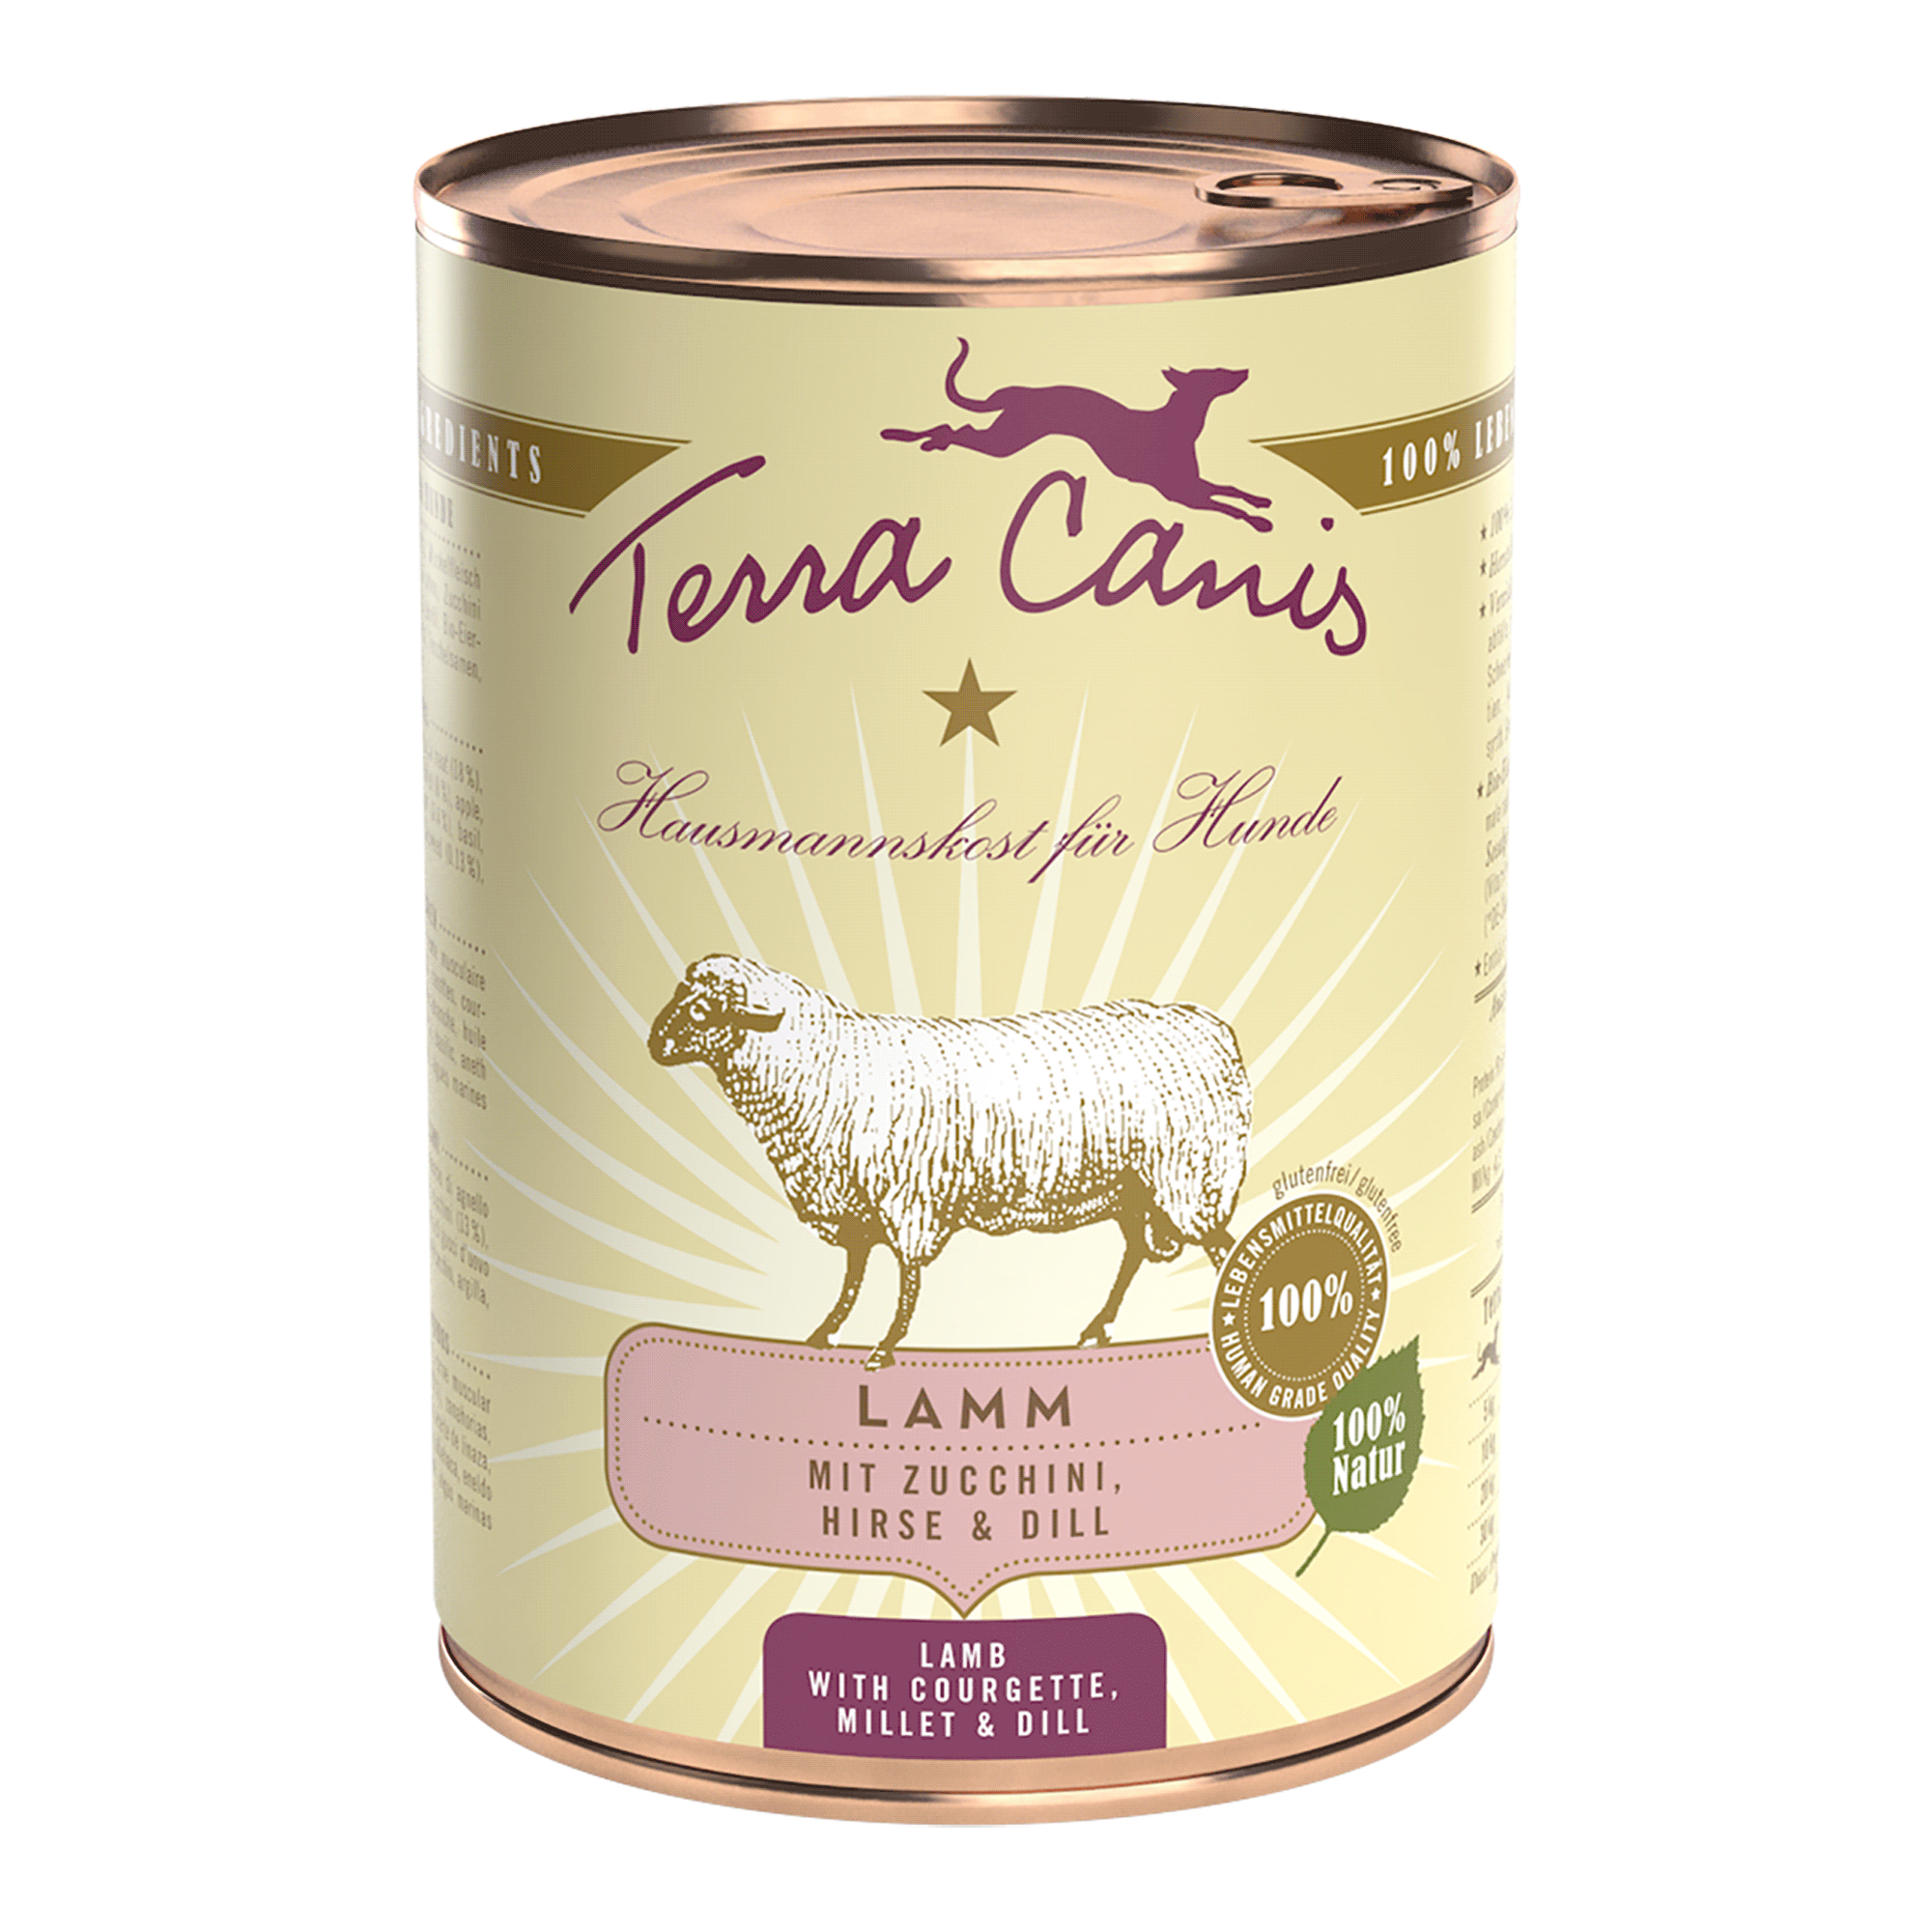 Terra Canis | Lamm mit Zucchini Hirse & Dill